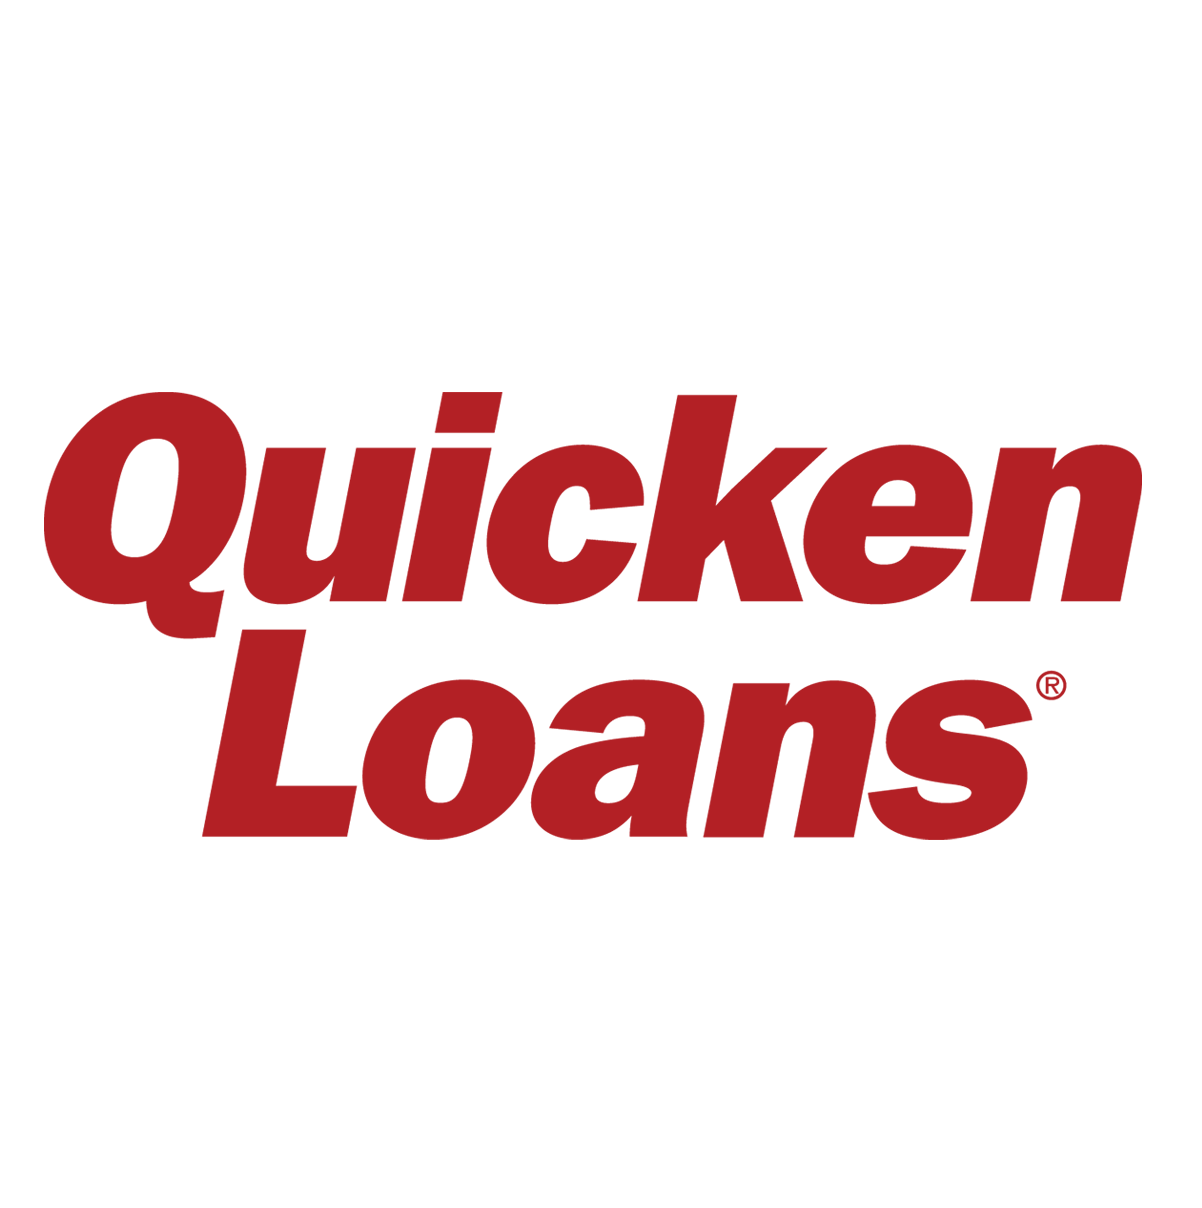 QuickenLoans-Logo-Stack